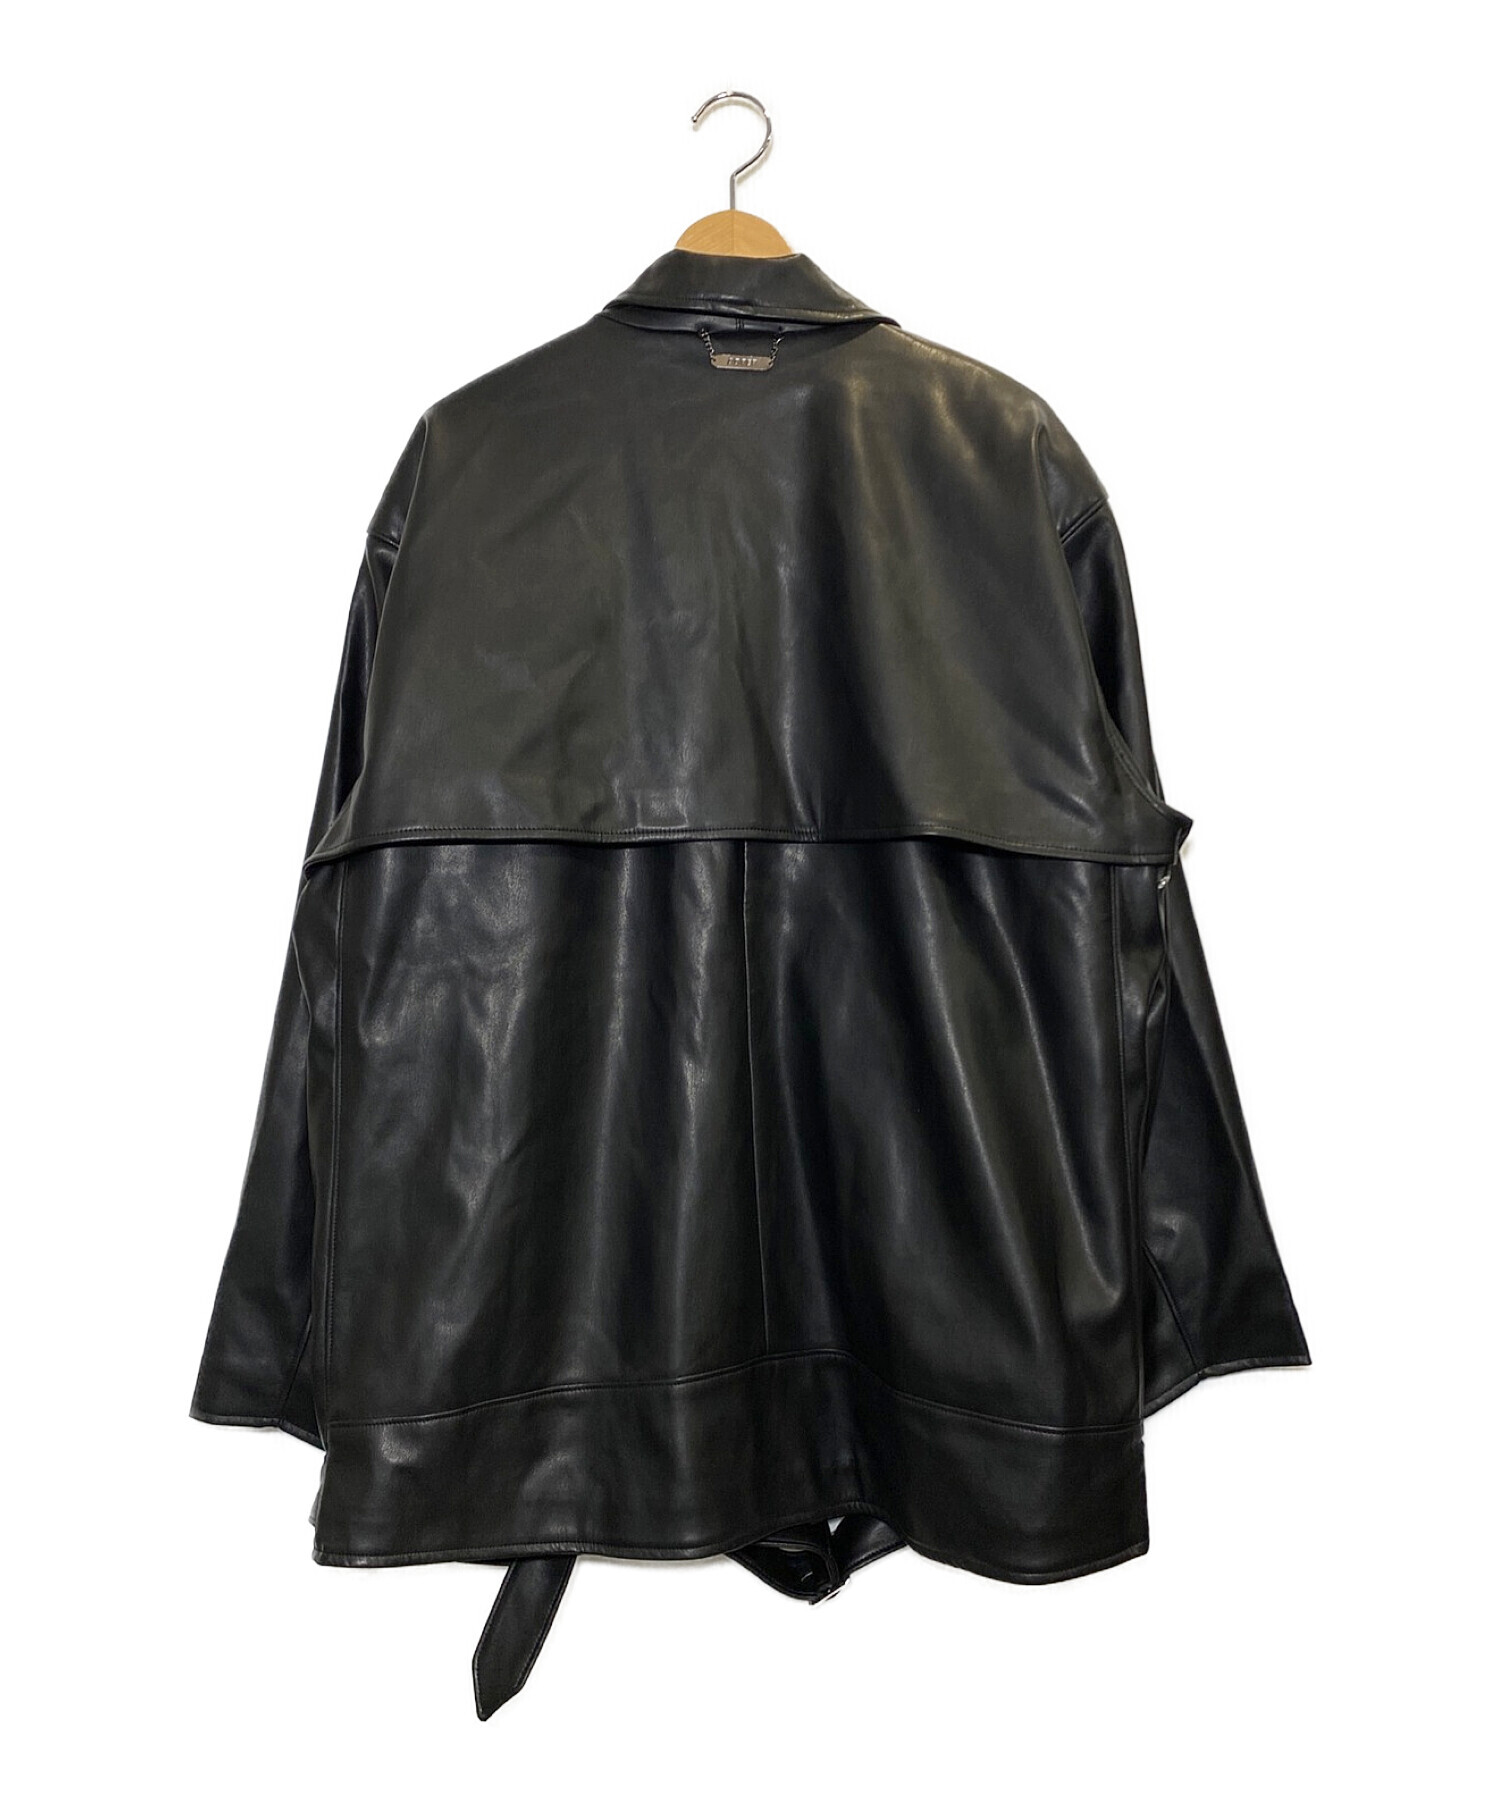 ADRER (アドラー) シンセティックレザーオーバーダブルライダースジャケット ブラック サイズ:M